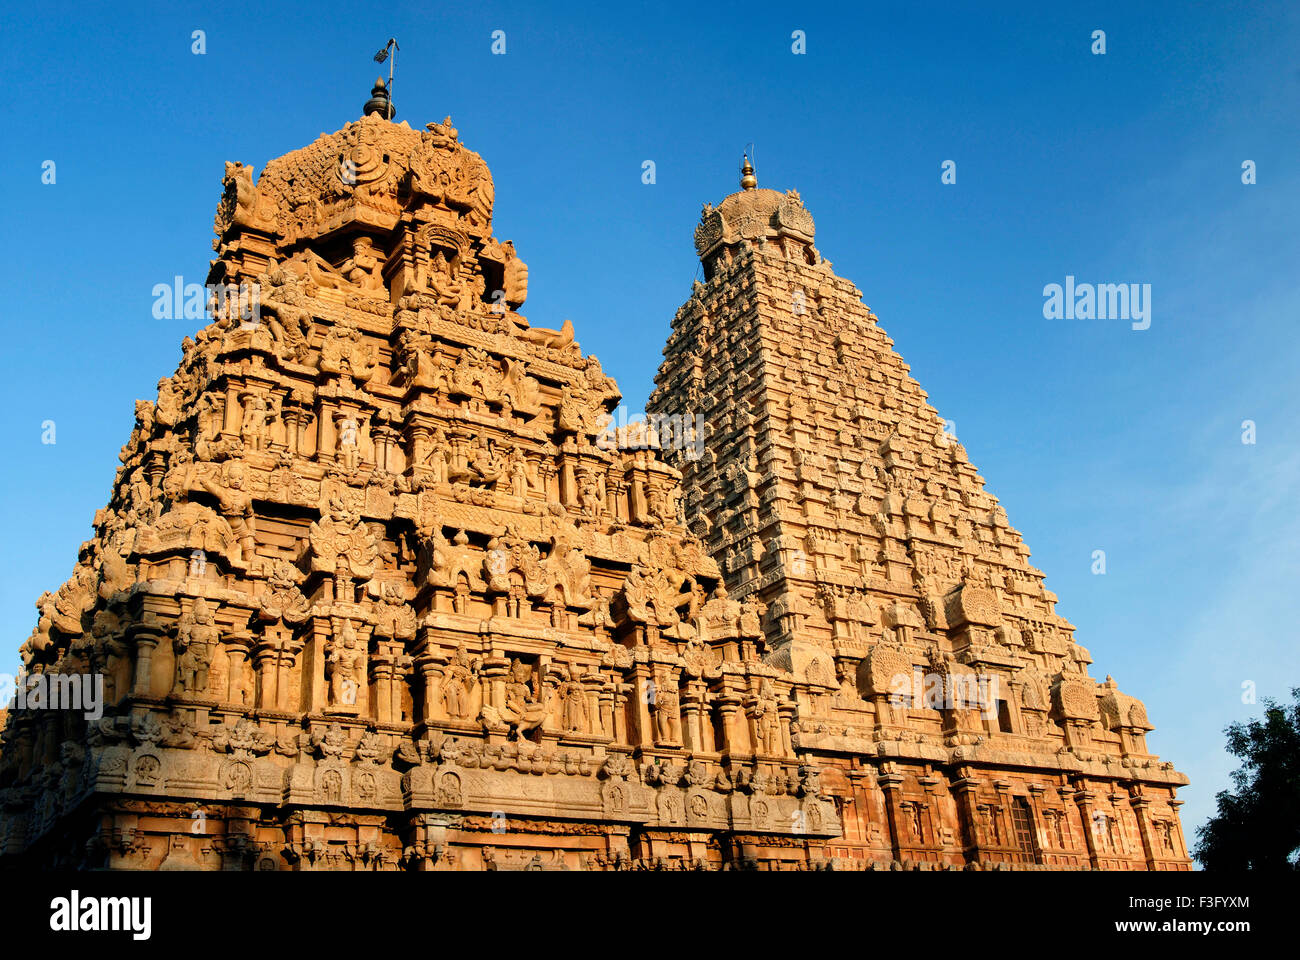 Le temple de Brihadishvara temple Chola du 10ème siècle est classé au Patrimoine Mondial de l'UNESCO ; Thanjavur ; Tamil Nadu Inde ; Banque D'Images